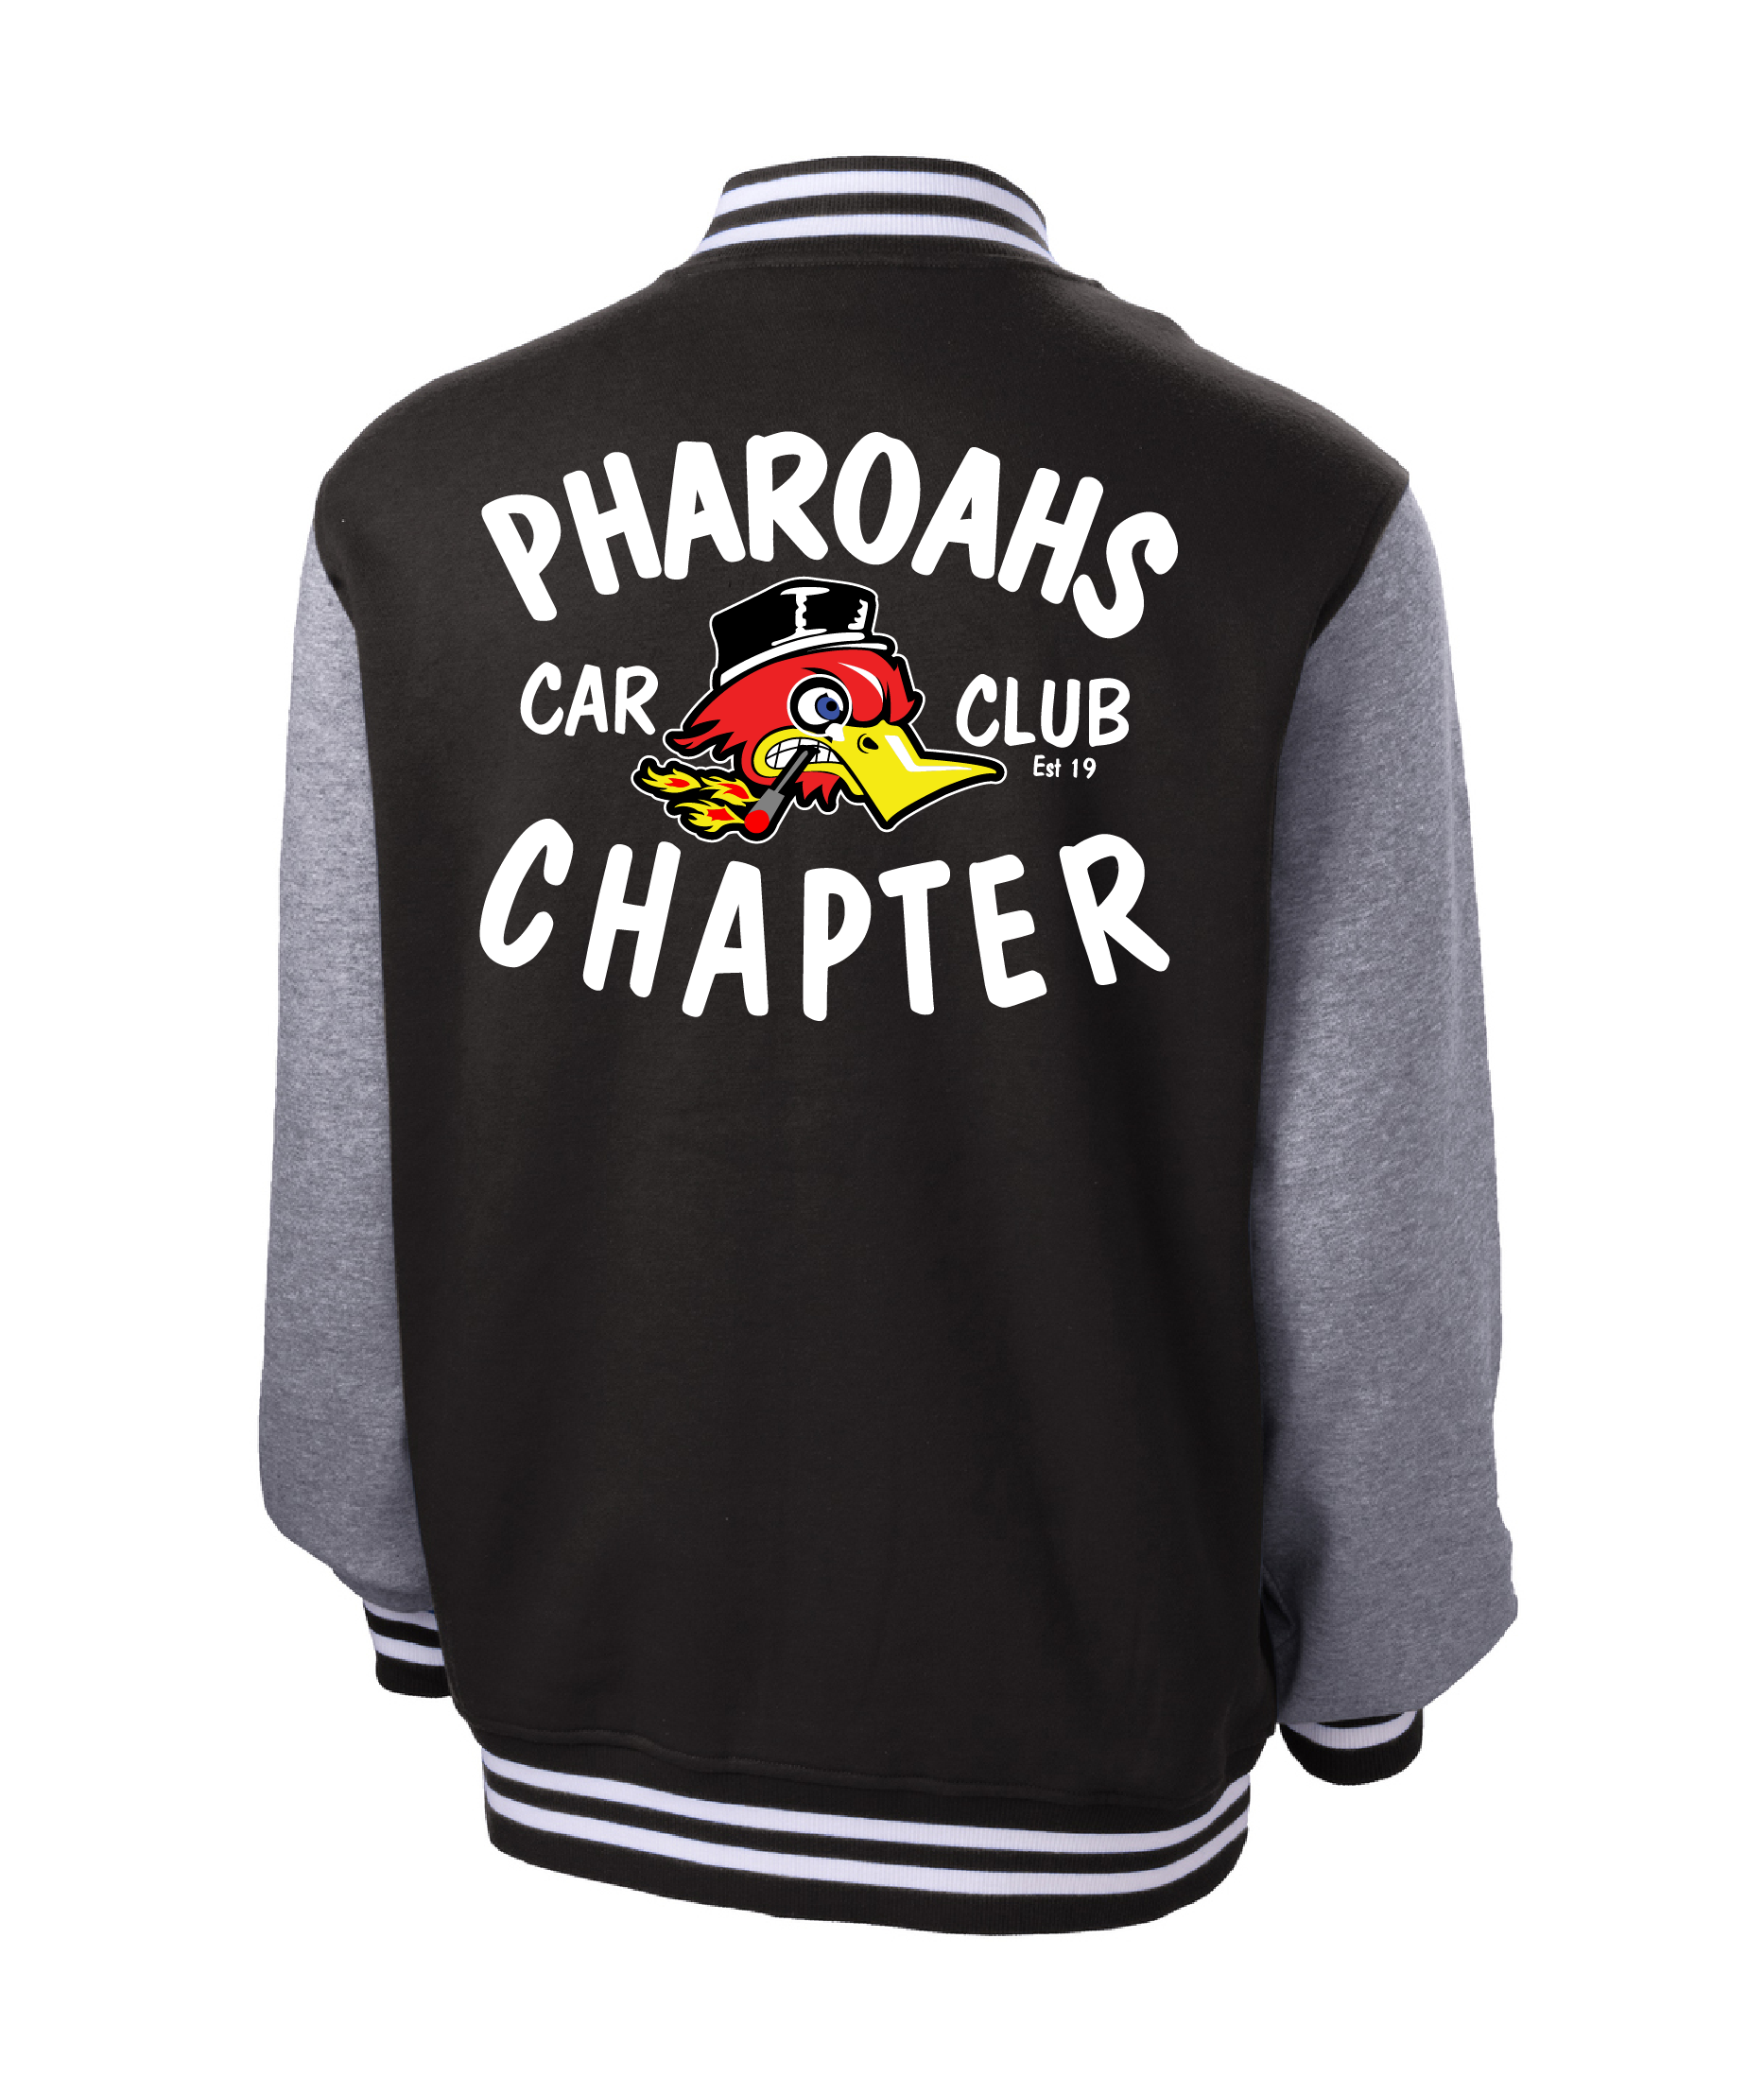 Pharoahs Car Club Letterman Jacket